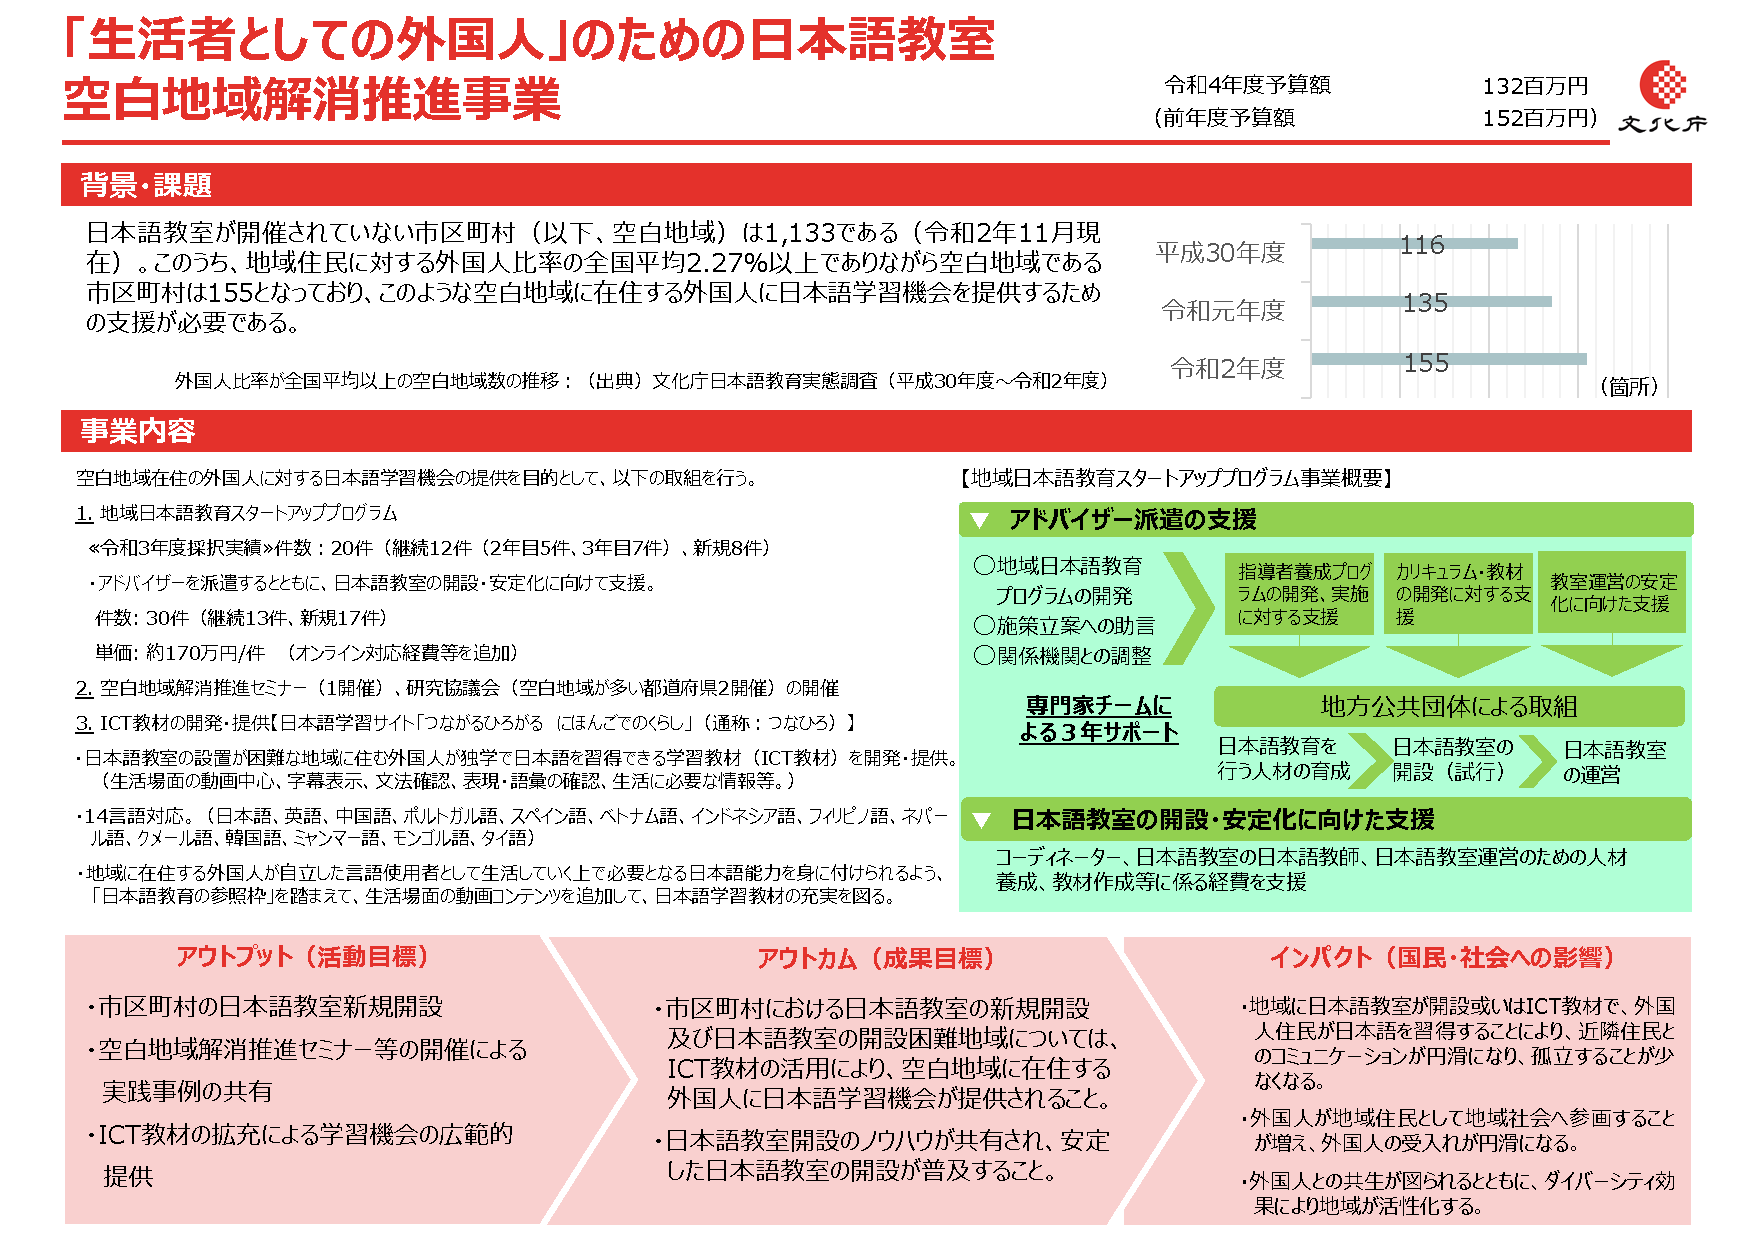 「生活者としての外国人」のための日本語教室空白地域解消推進事業　概要図（画像をクリックするとPDFが開きます。）